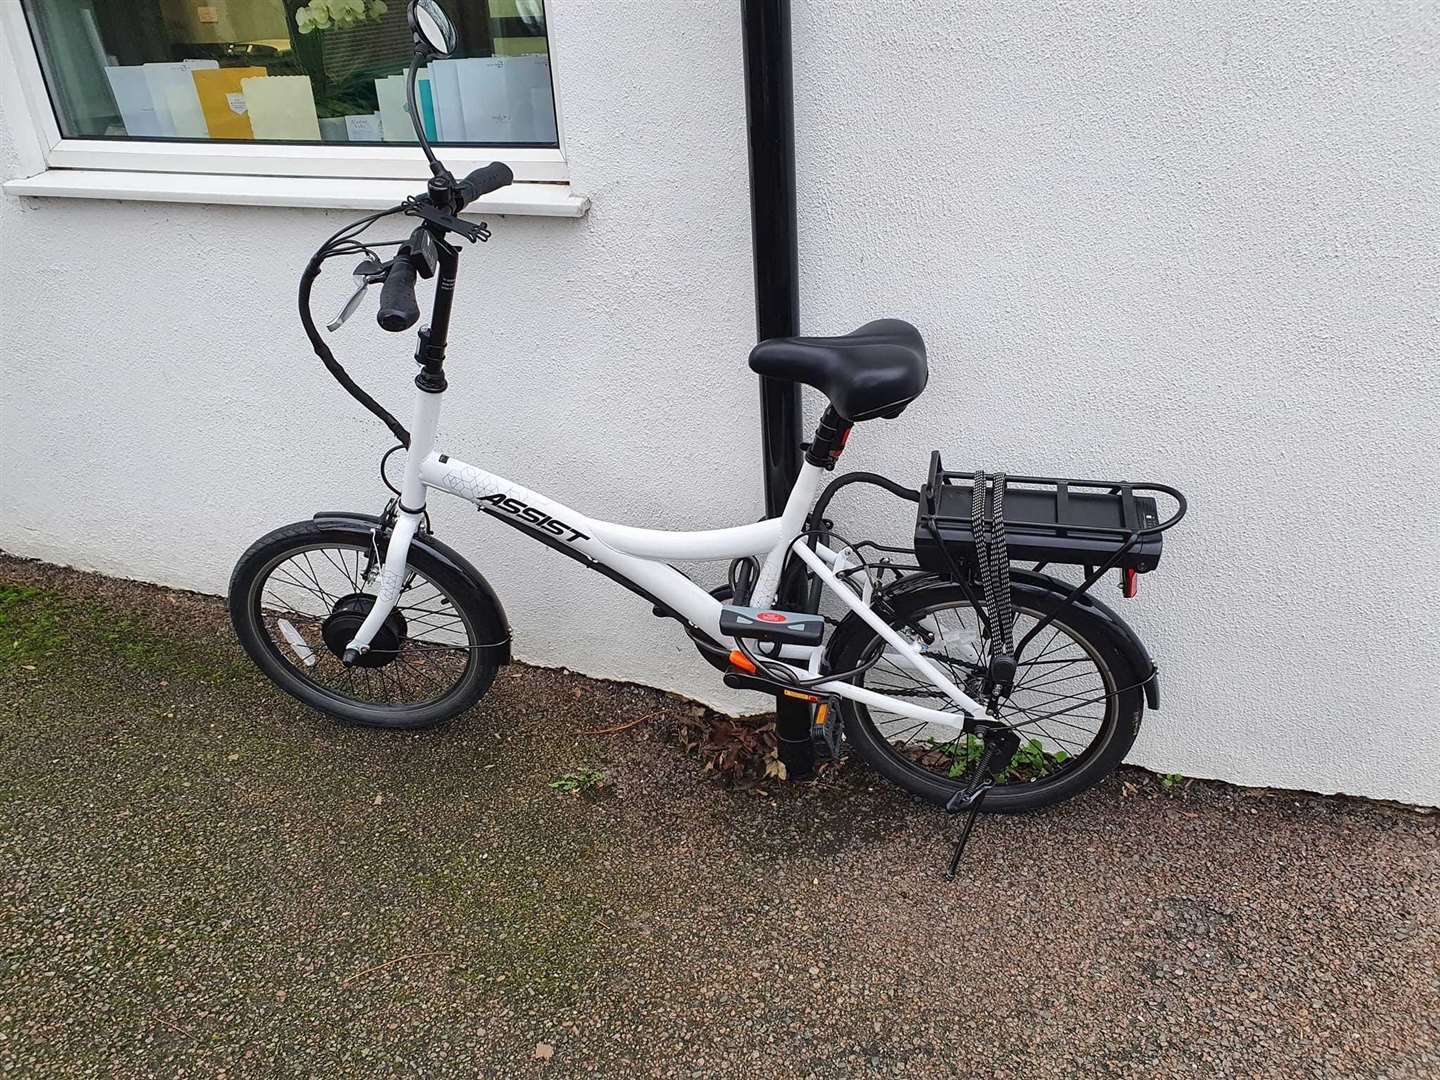 The stolen bike is worth around £500